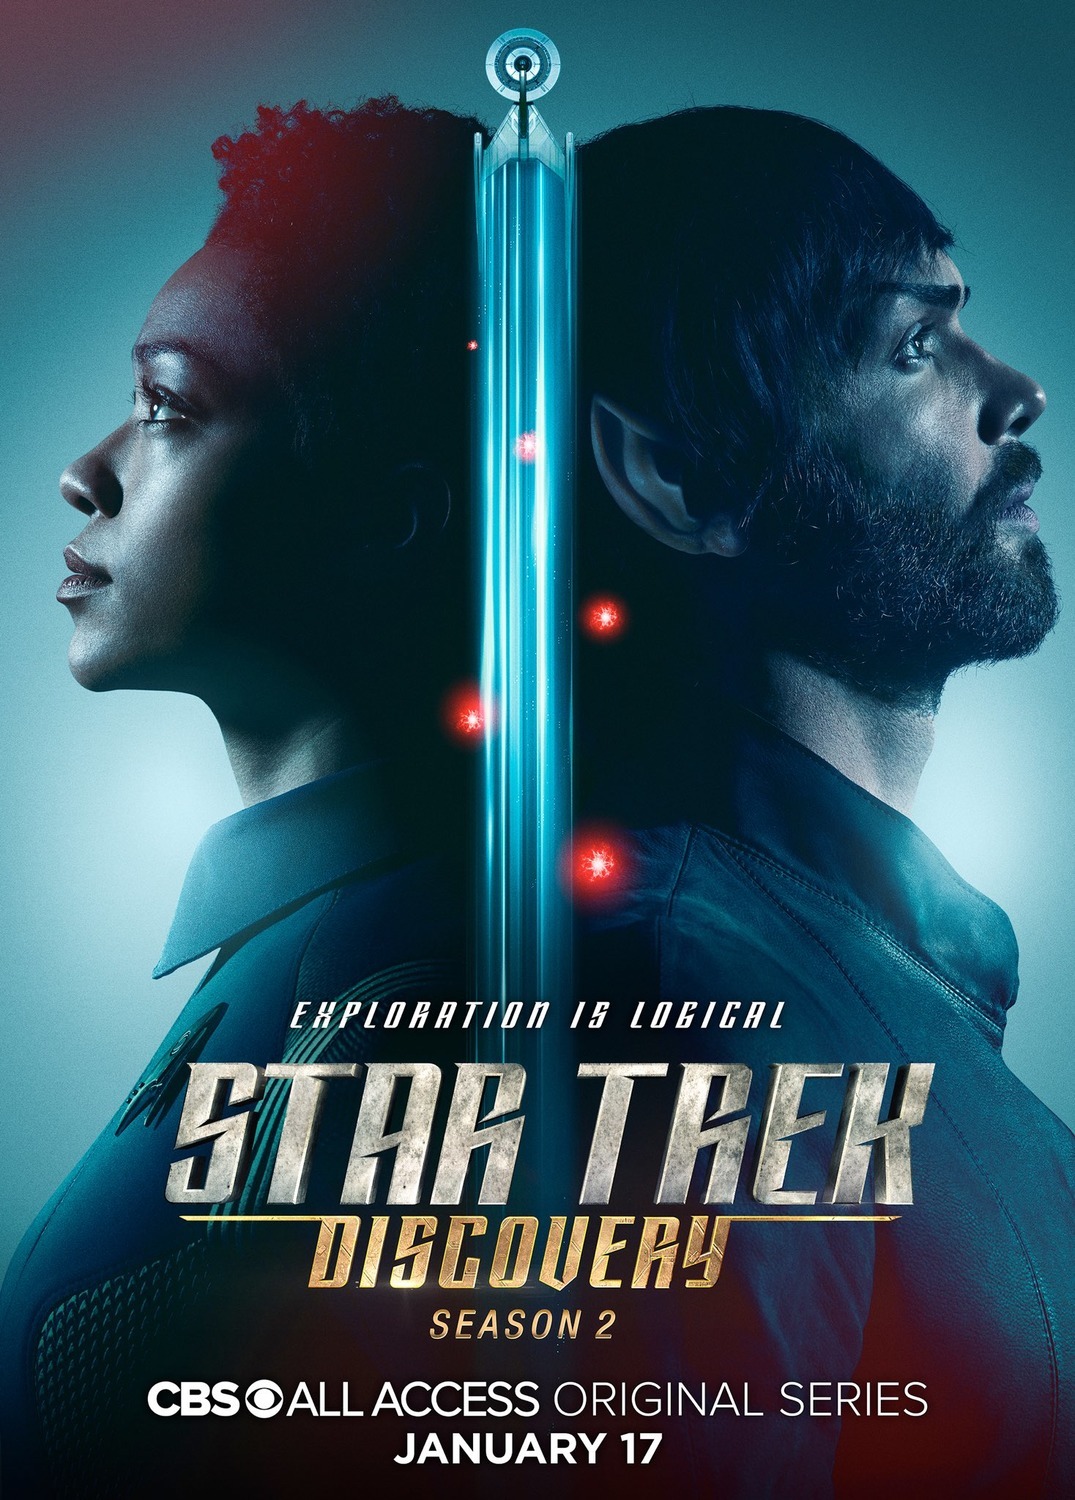 ดูหนังออนไลน์ฟรี Star Trek Discovery Season 2 EP.7 สตาร์ เทรค ดิสคัฟเวอรี่ ซีซั่นที่ 2 ตอนที่ 7